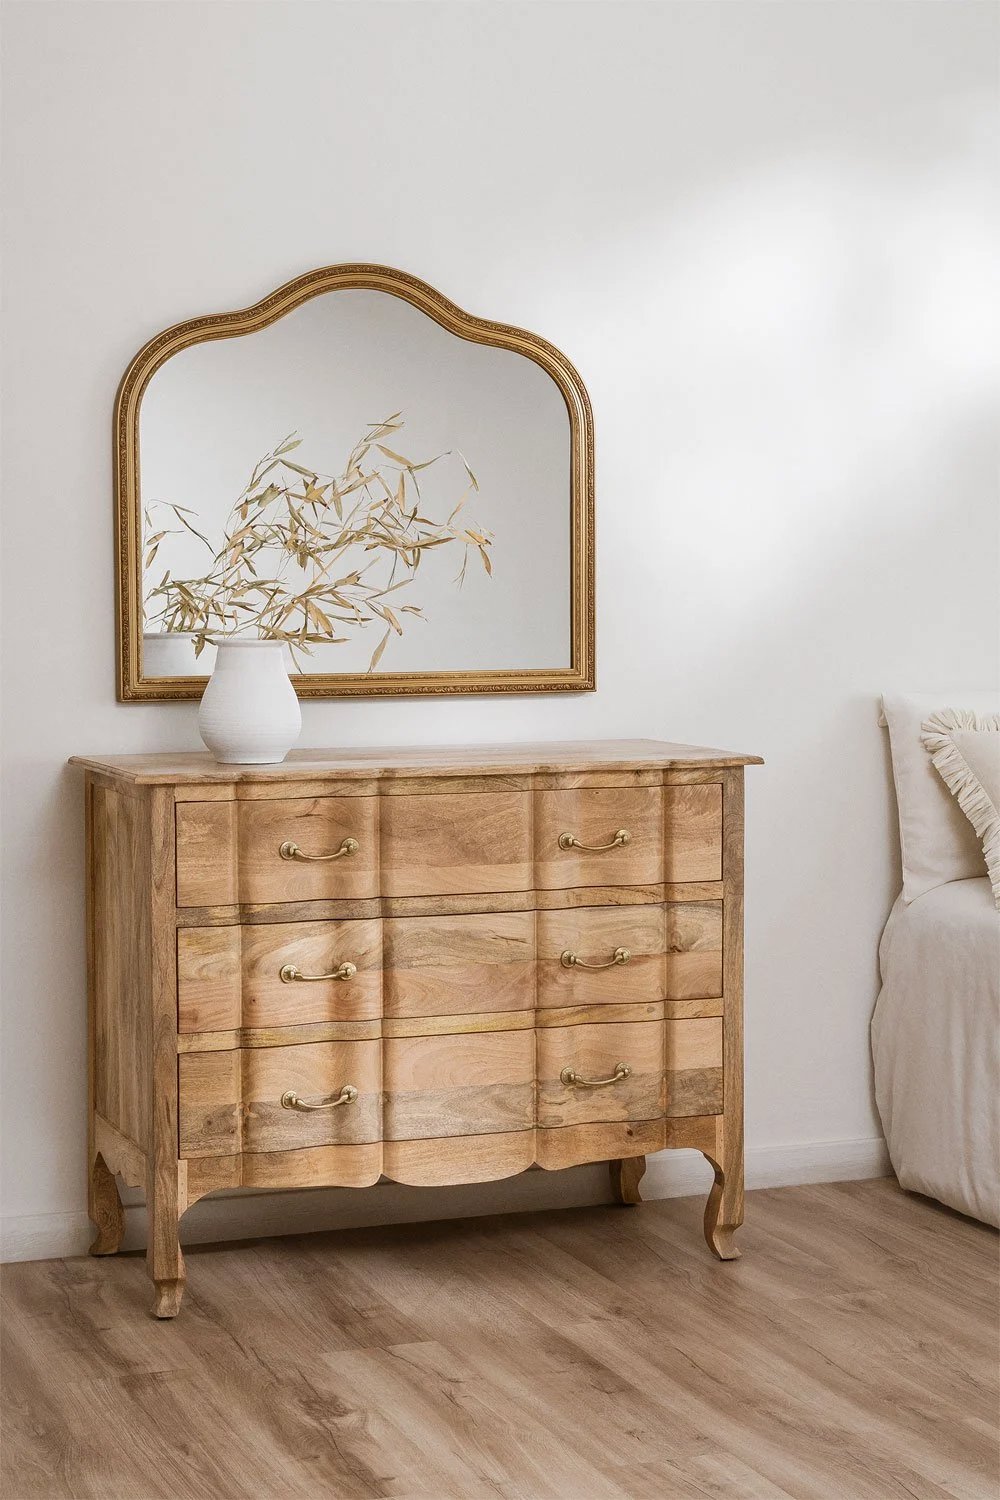 Cajonera cómoda de formas curvas como los muebles clásicos y elegantes. Madera clara que se complementa con el espejo de marco dorado sobre ella y el jarrón con flores y espigas. 